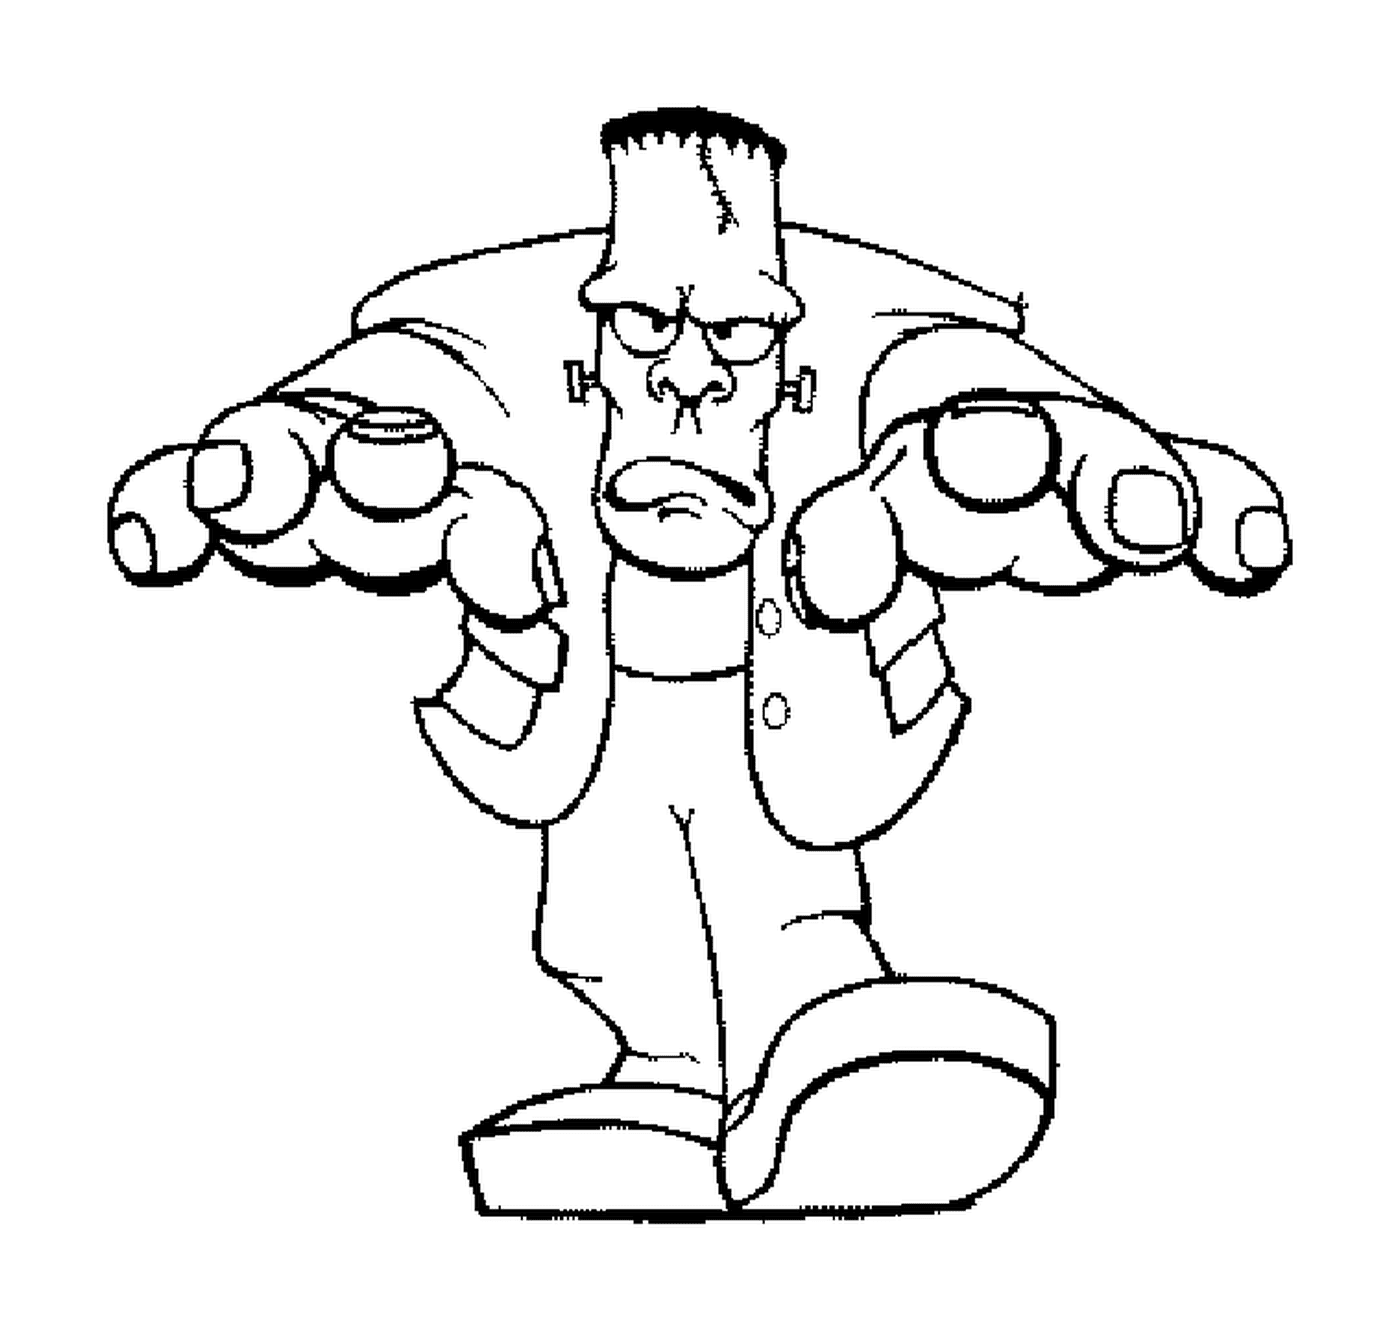  Frankenstein cartoon hands 